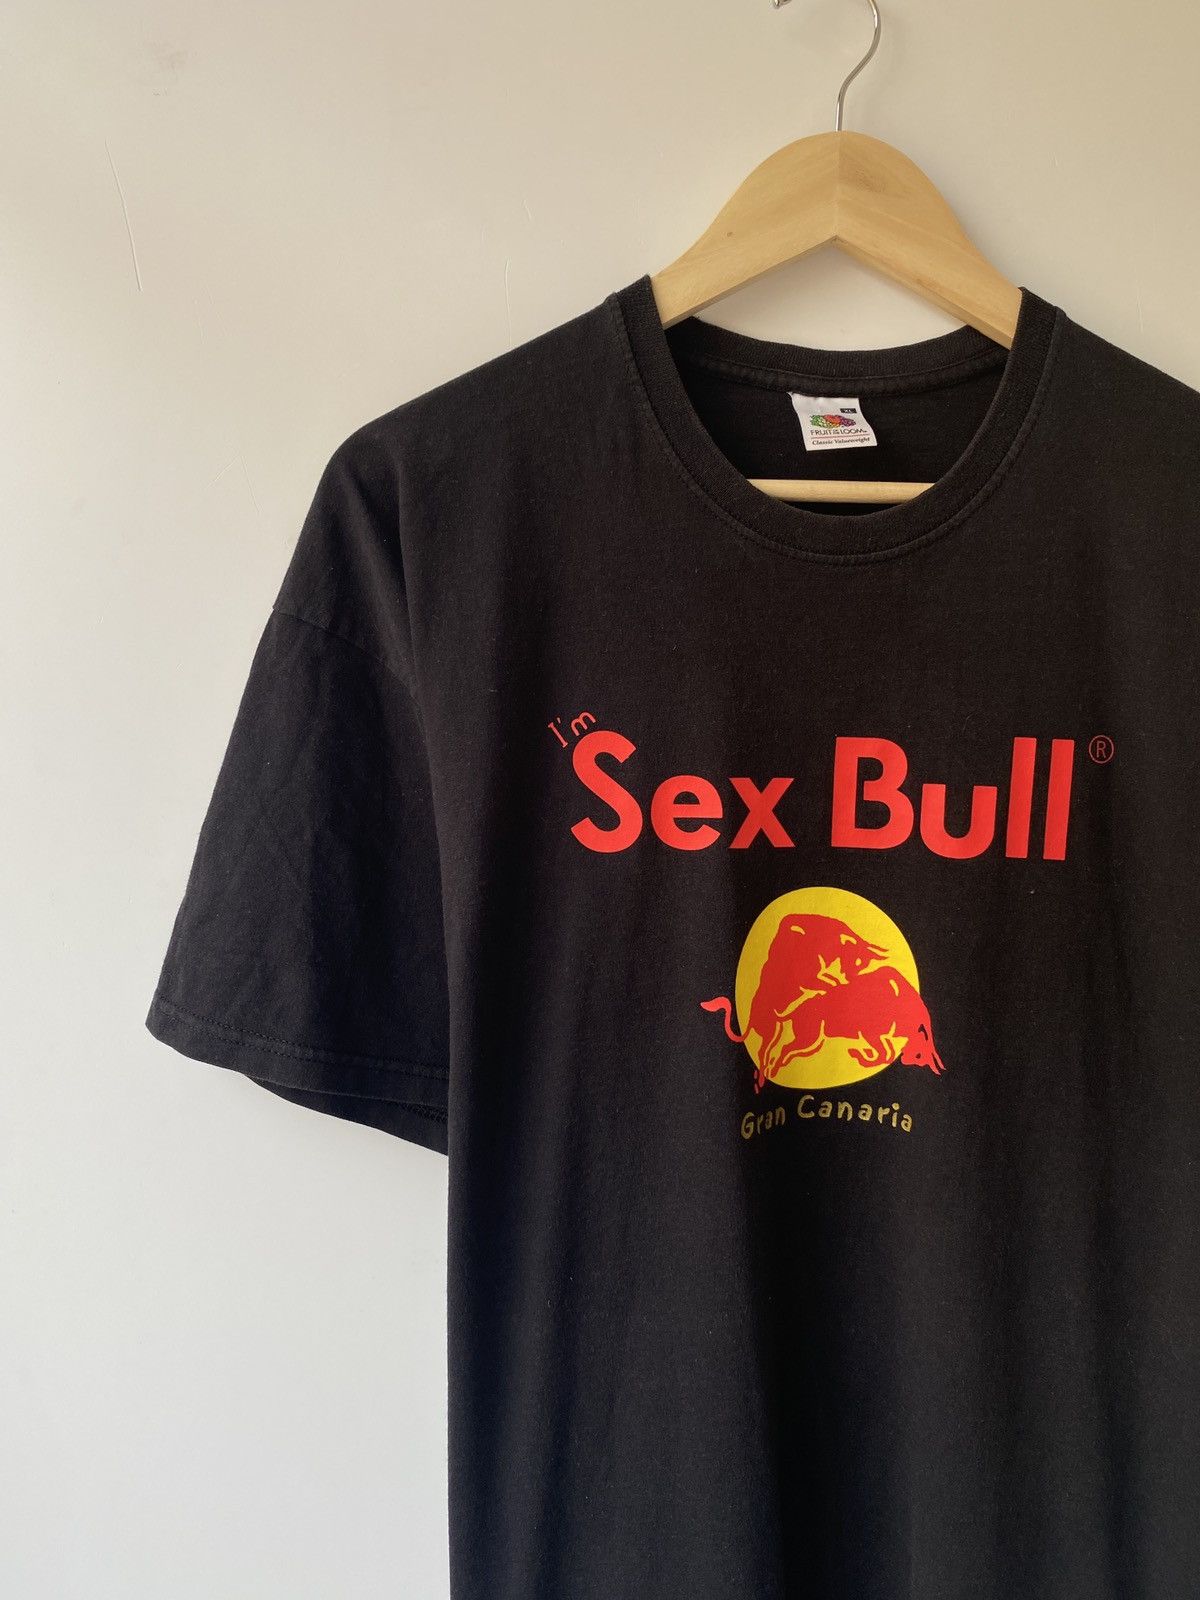 Sexbull - Humor Sex Bull Red Bull funny t-shirt | Grailed